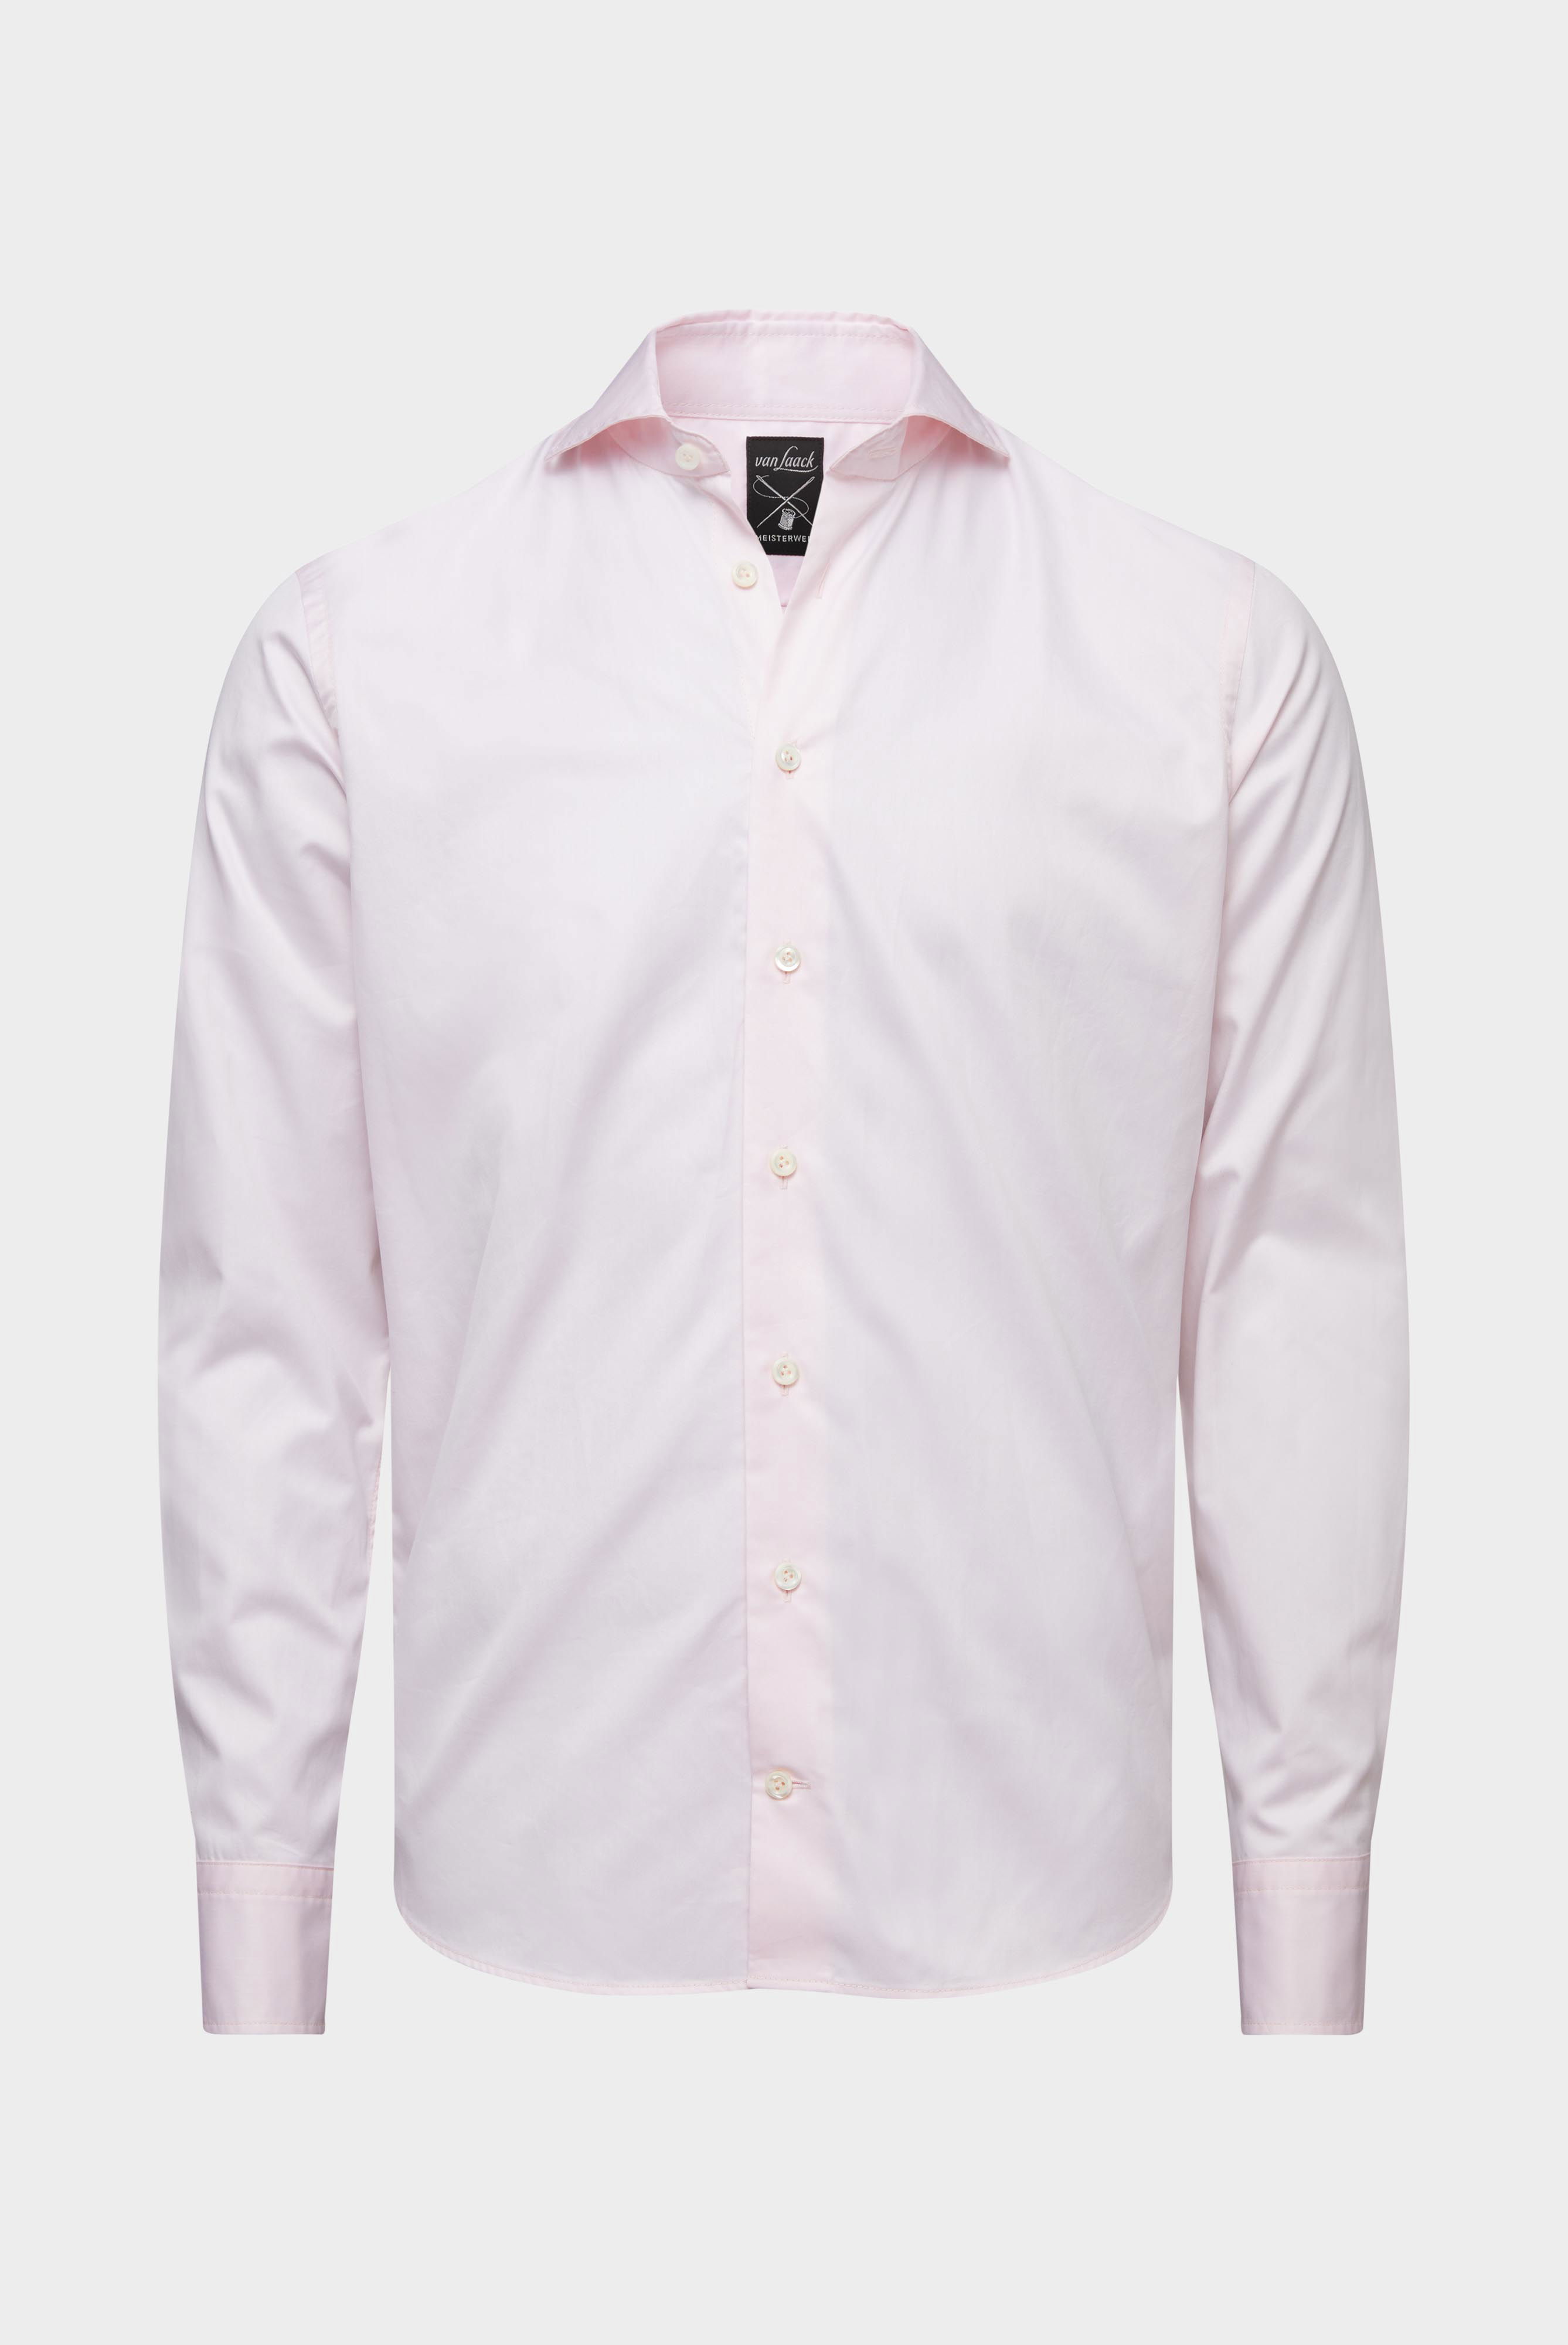 Business Shirts+Soft Washed Fine Twill Shirt+20.2015.EB.160708.520.46